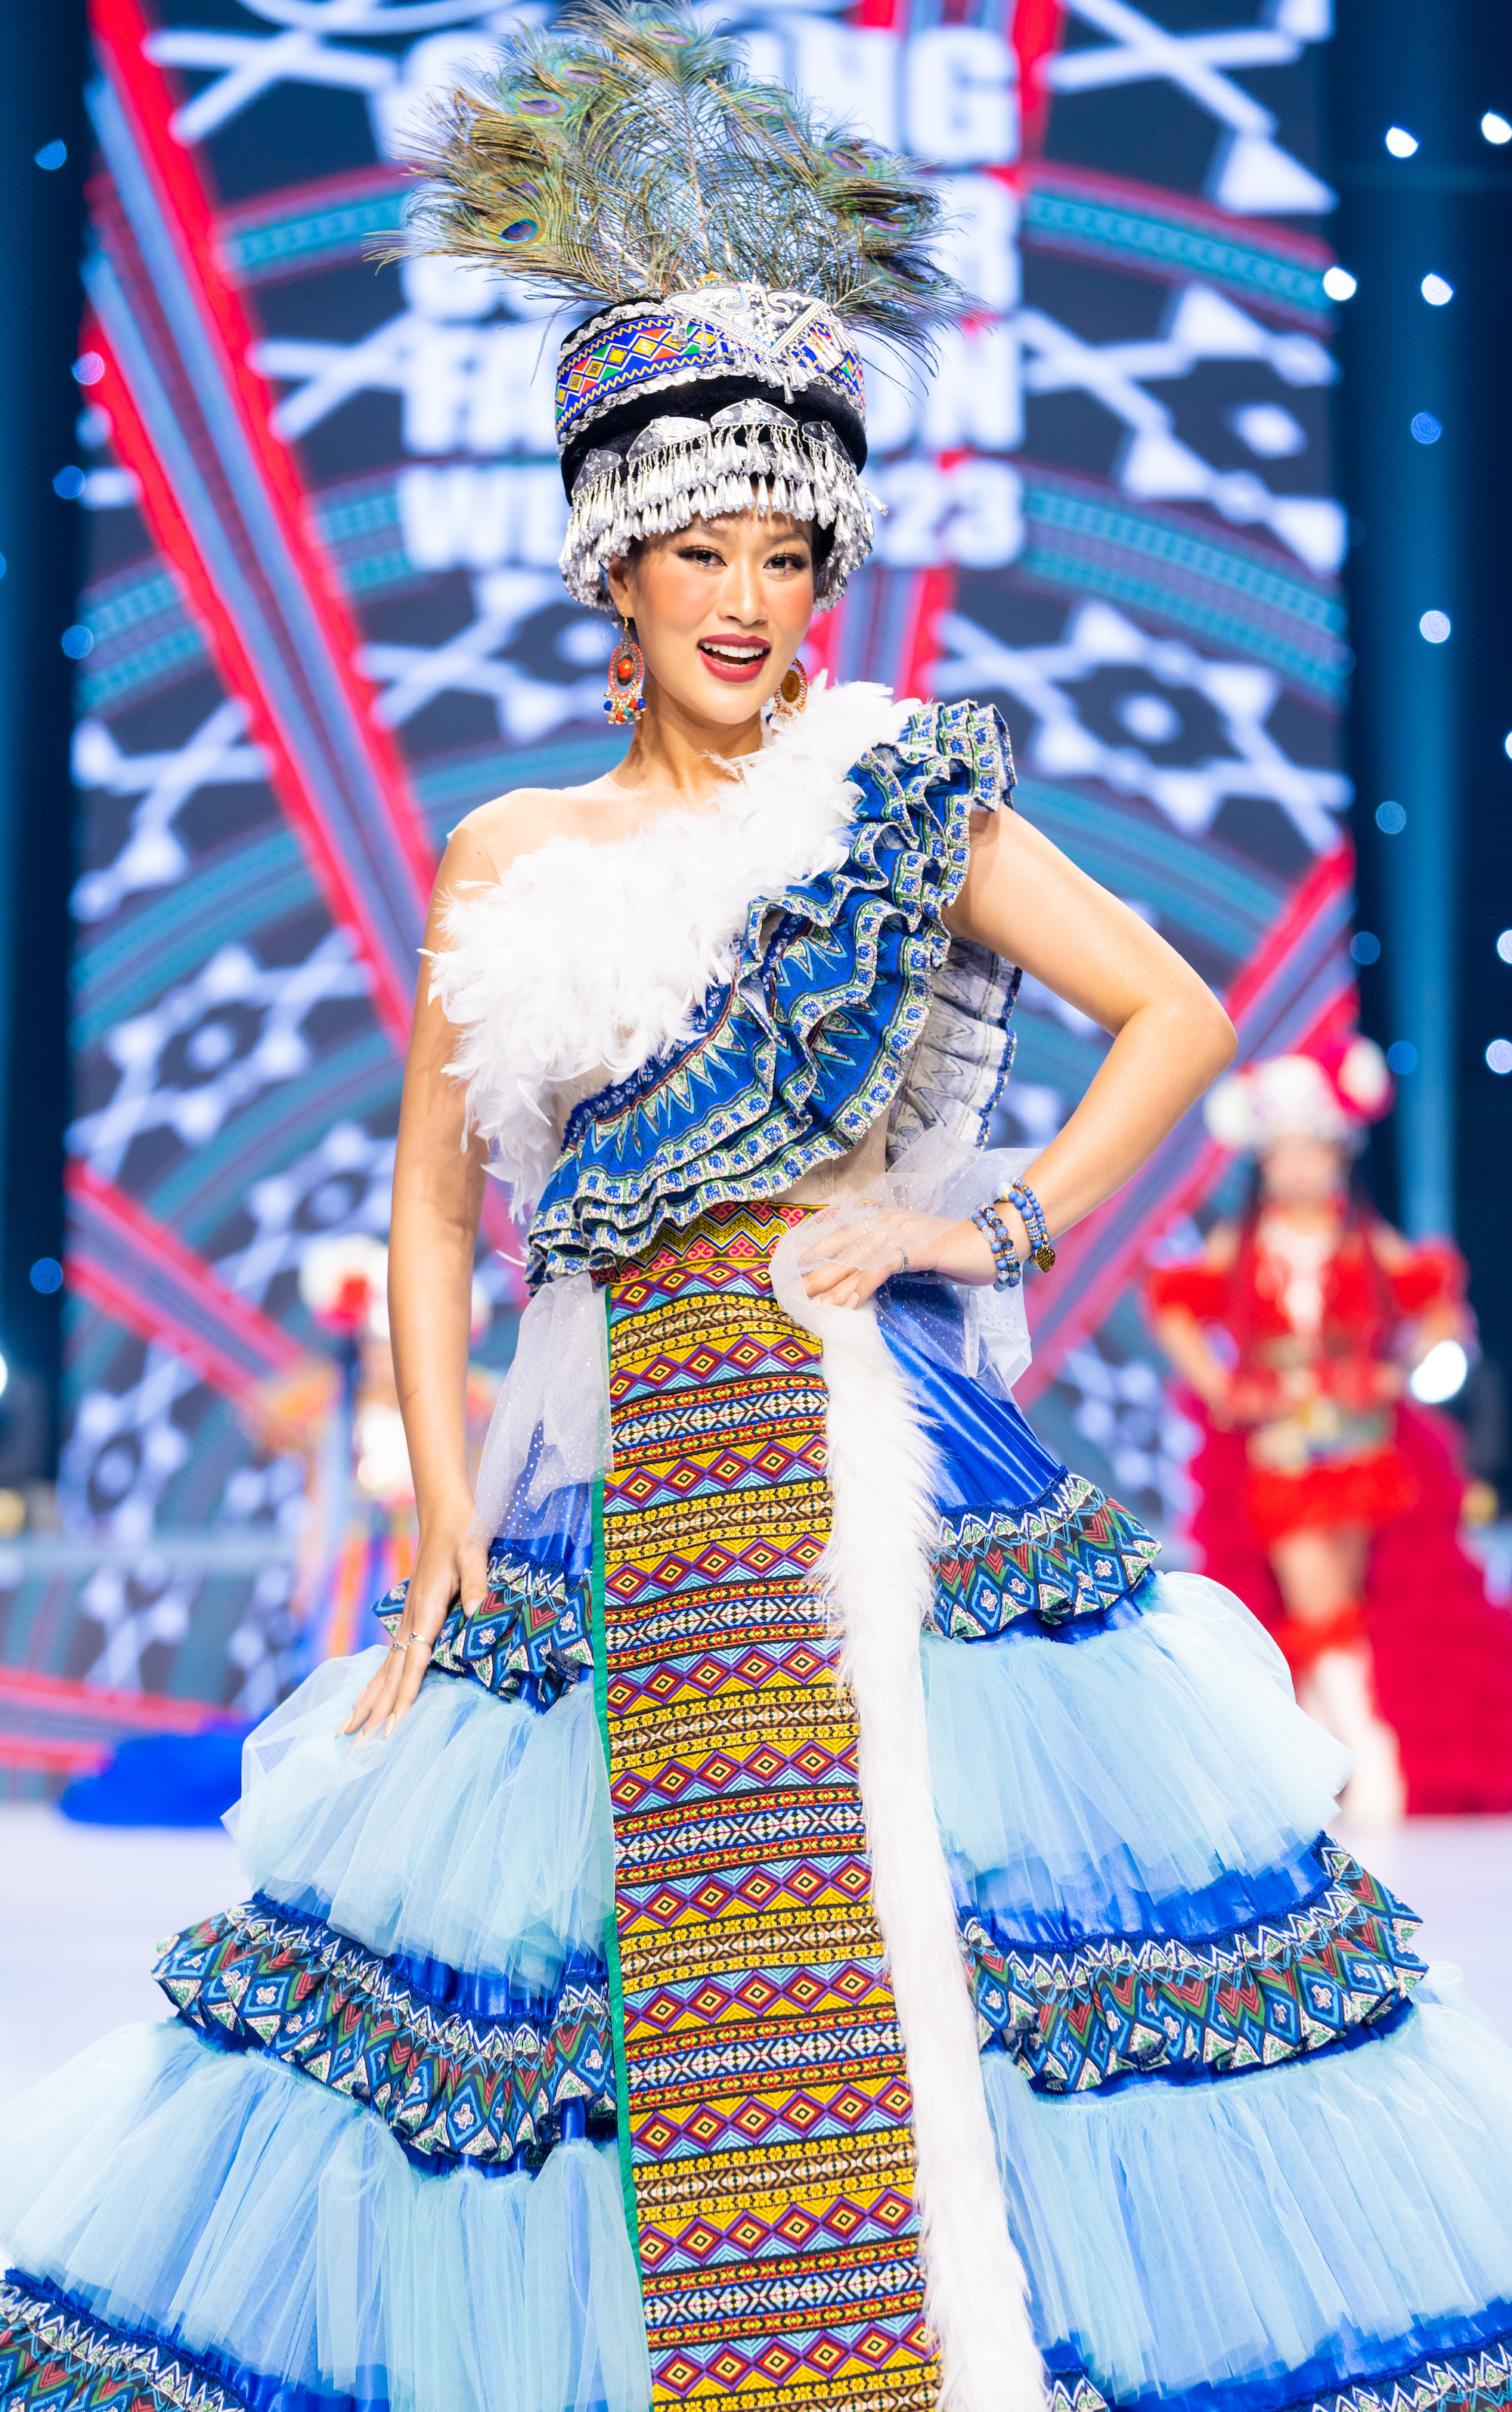 Hoa hậu Thiên Ân đọ sắc cùng Bùi Lý Thiên Hương trên sàn diễn - Ảnh 4.